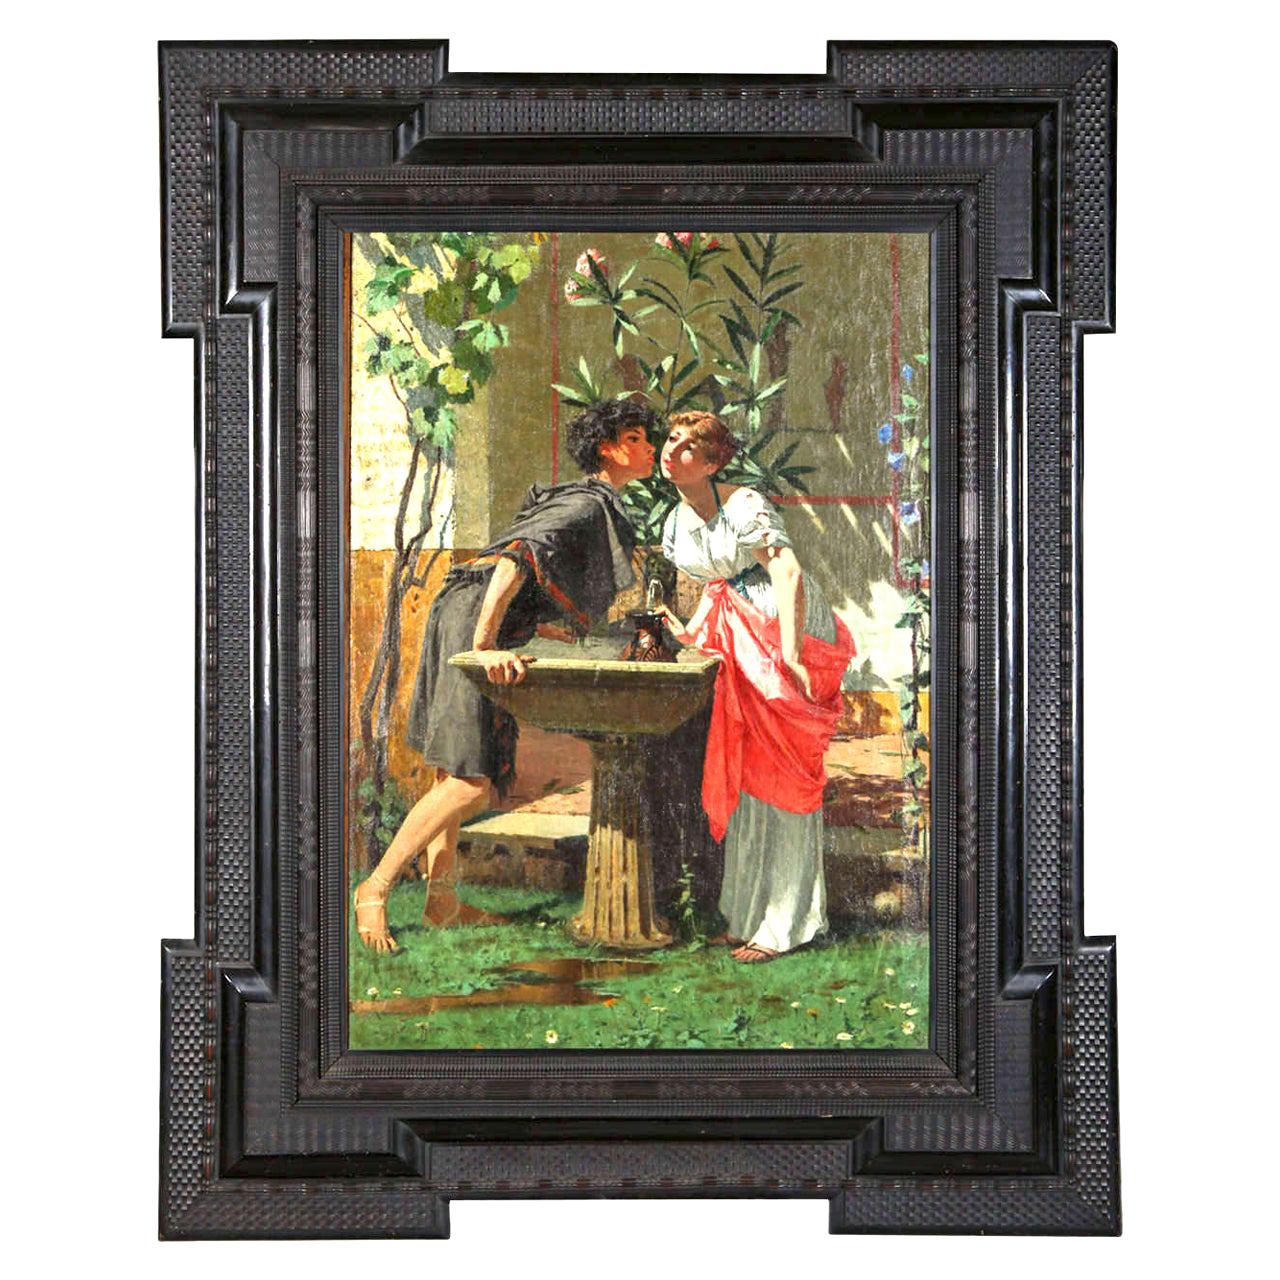 Peinture à l'huile sur toile du XIXe siècle « Lovers by a Fountain », Modesto Faustini, 1860